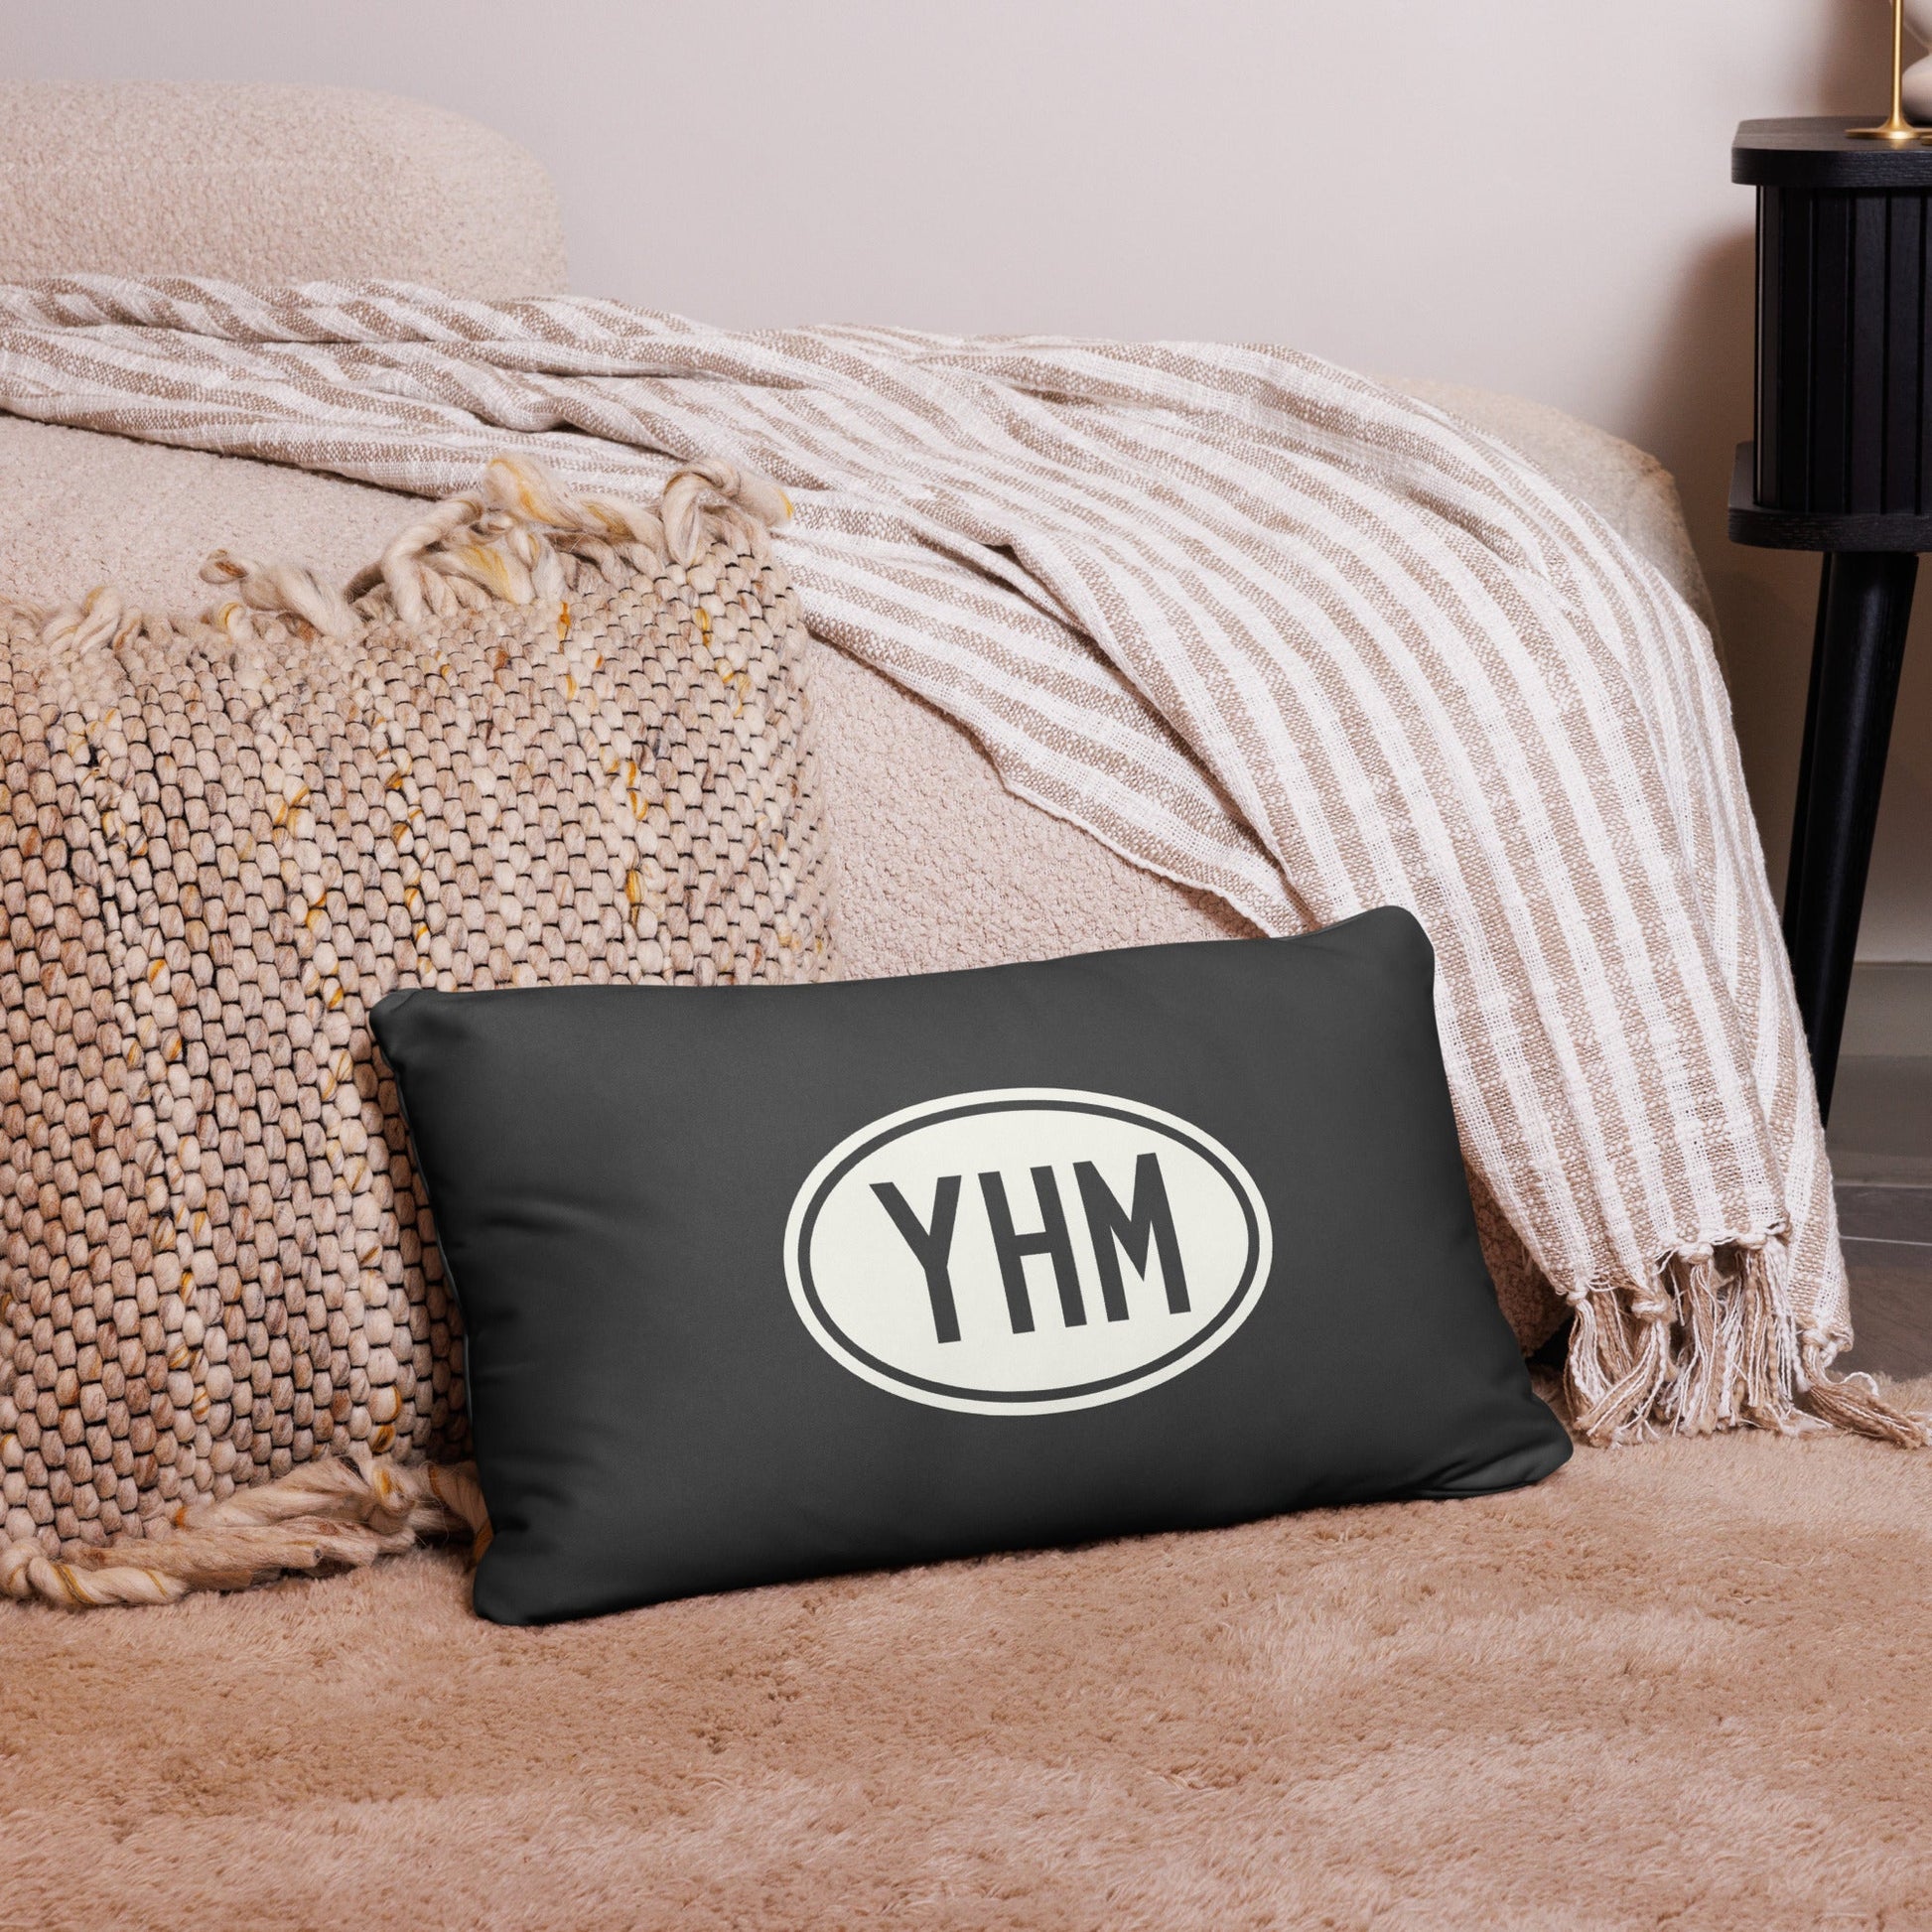 Unique Travel Gift Throw Pillow - White Oval • YEG Edmonton • YHM Designs - Image 05